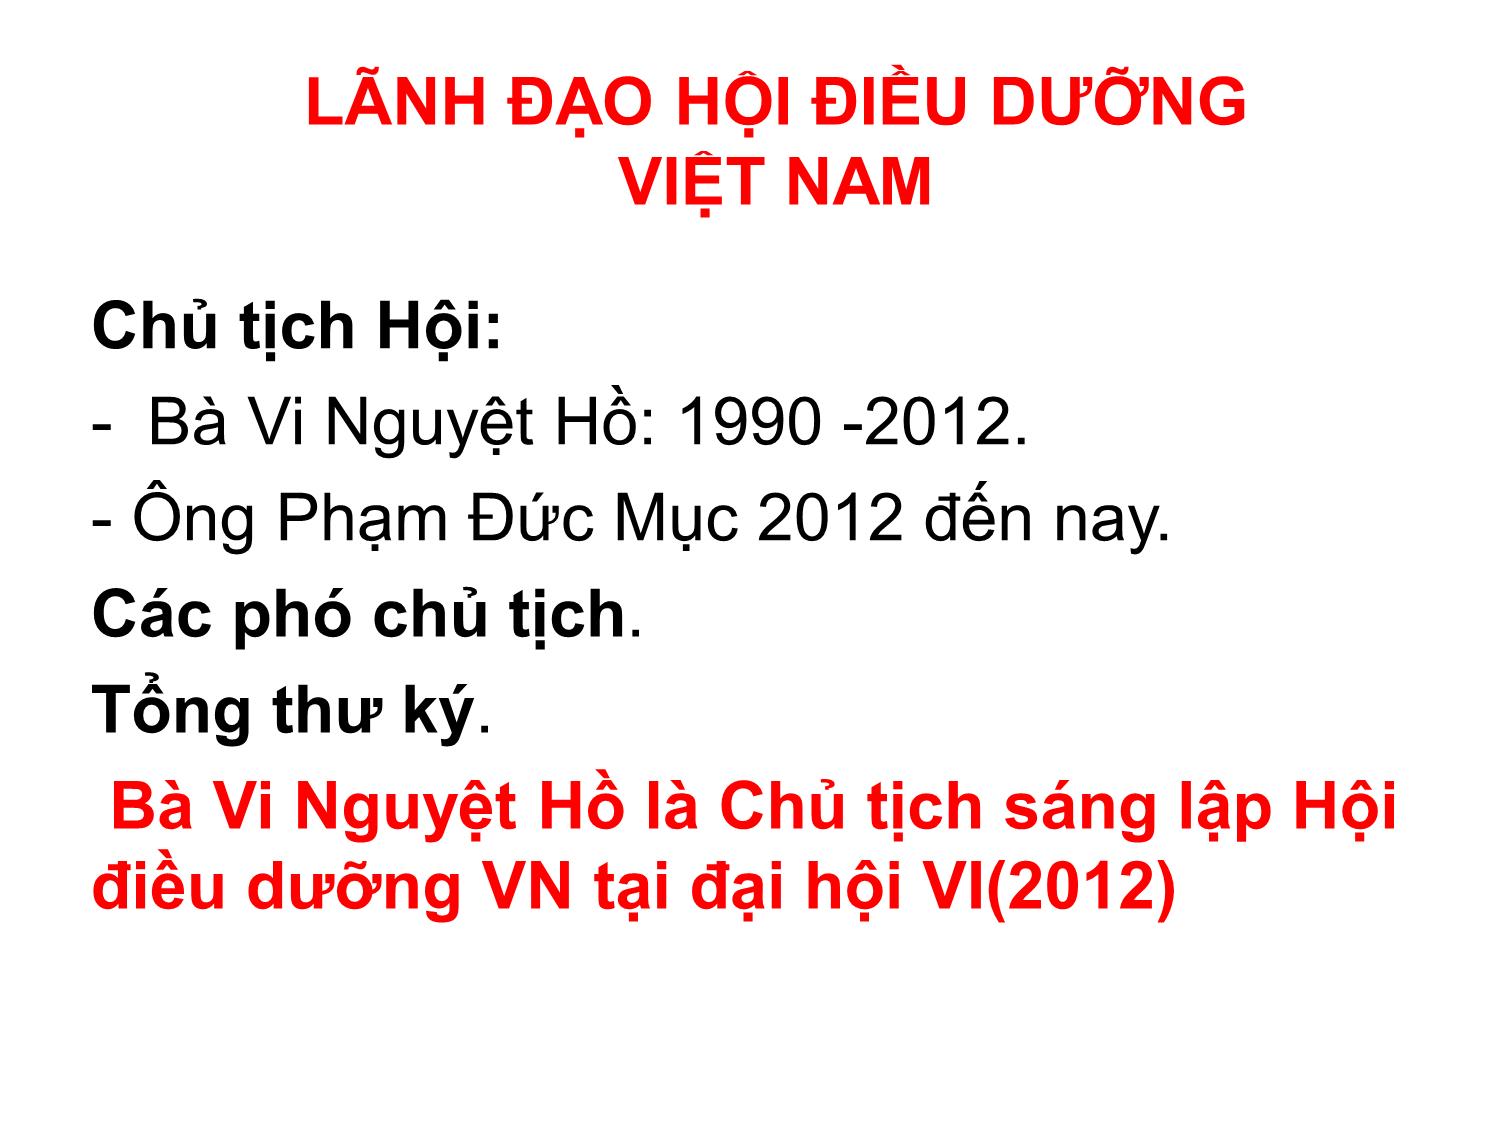 Kế hoạch tăng cường năng lực hội điều dưỡng và phát triển nghề điều dưỡng Việt Nam giai đoạn 2010 - 2015 trang 3